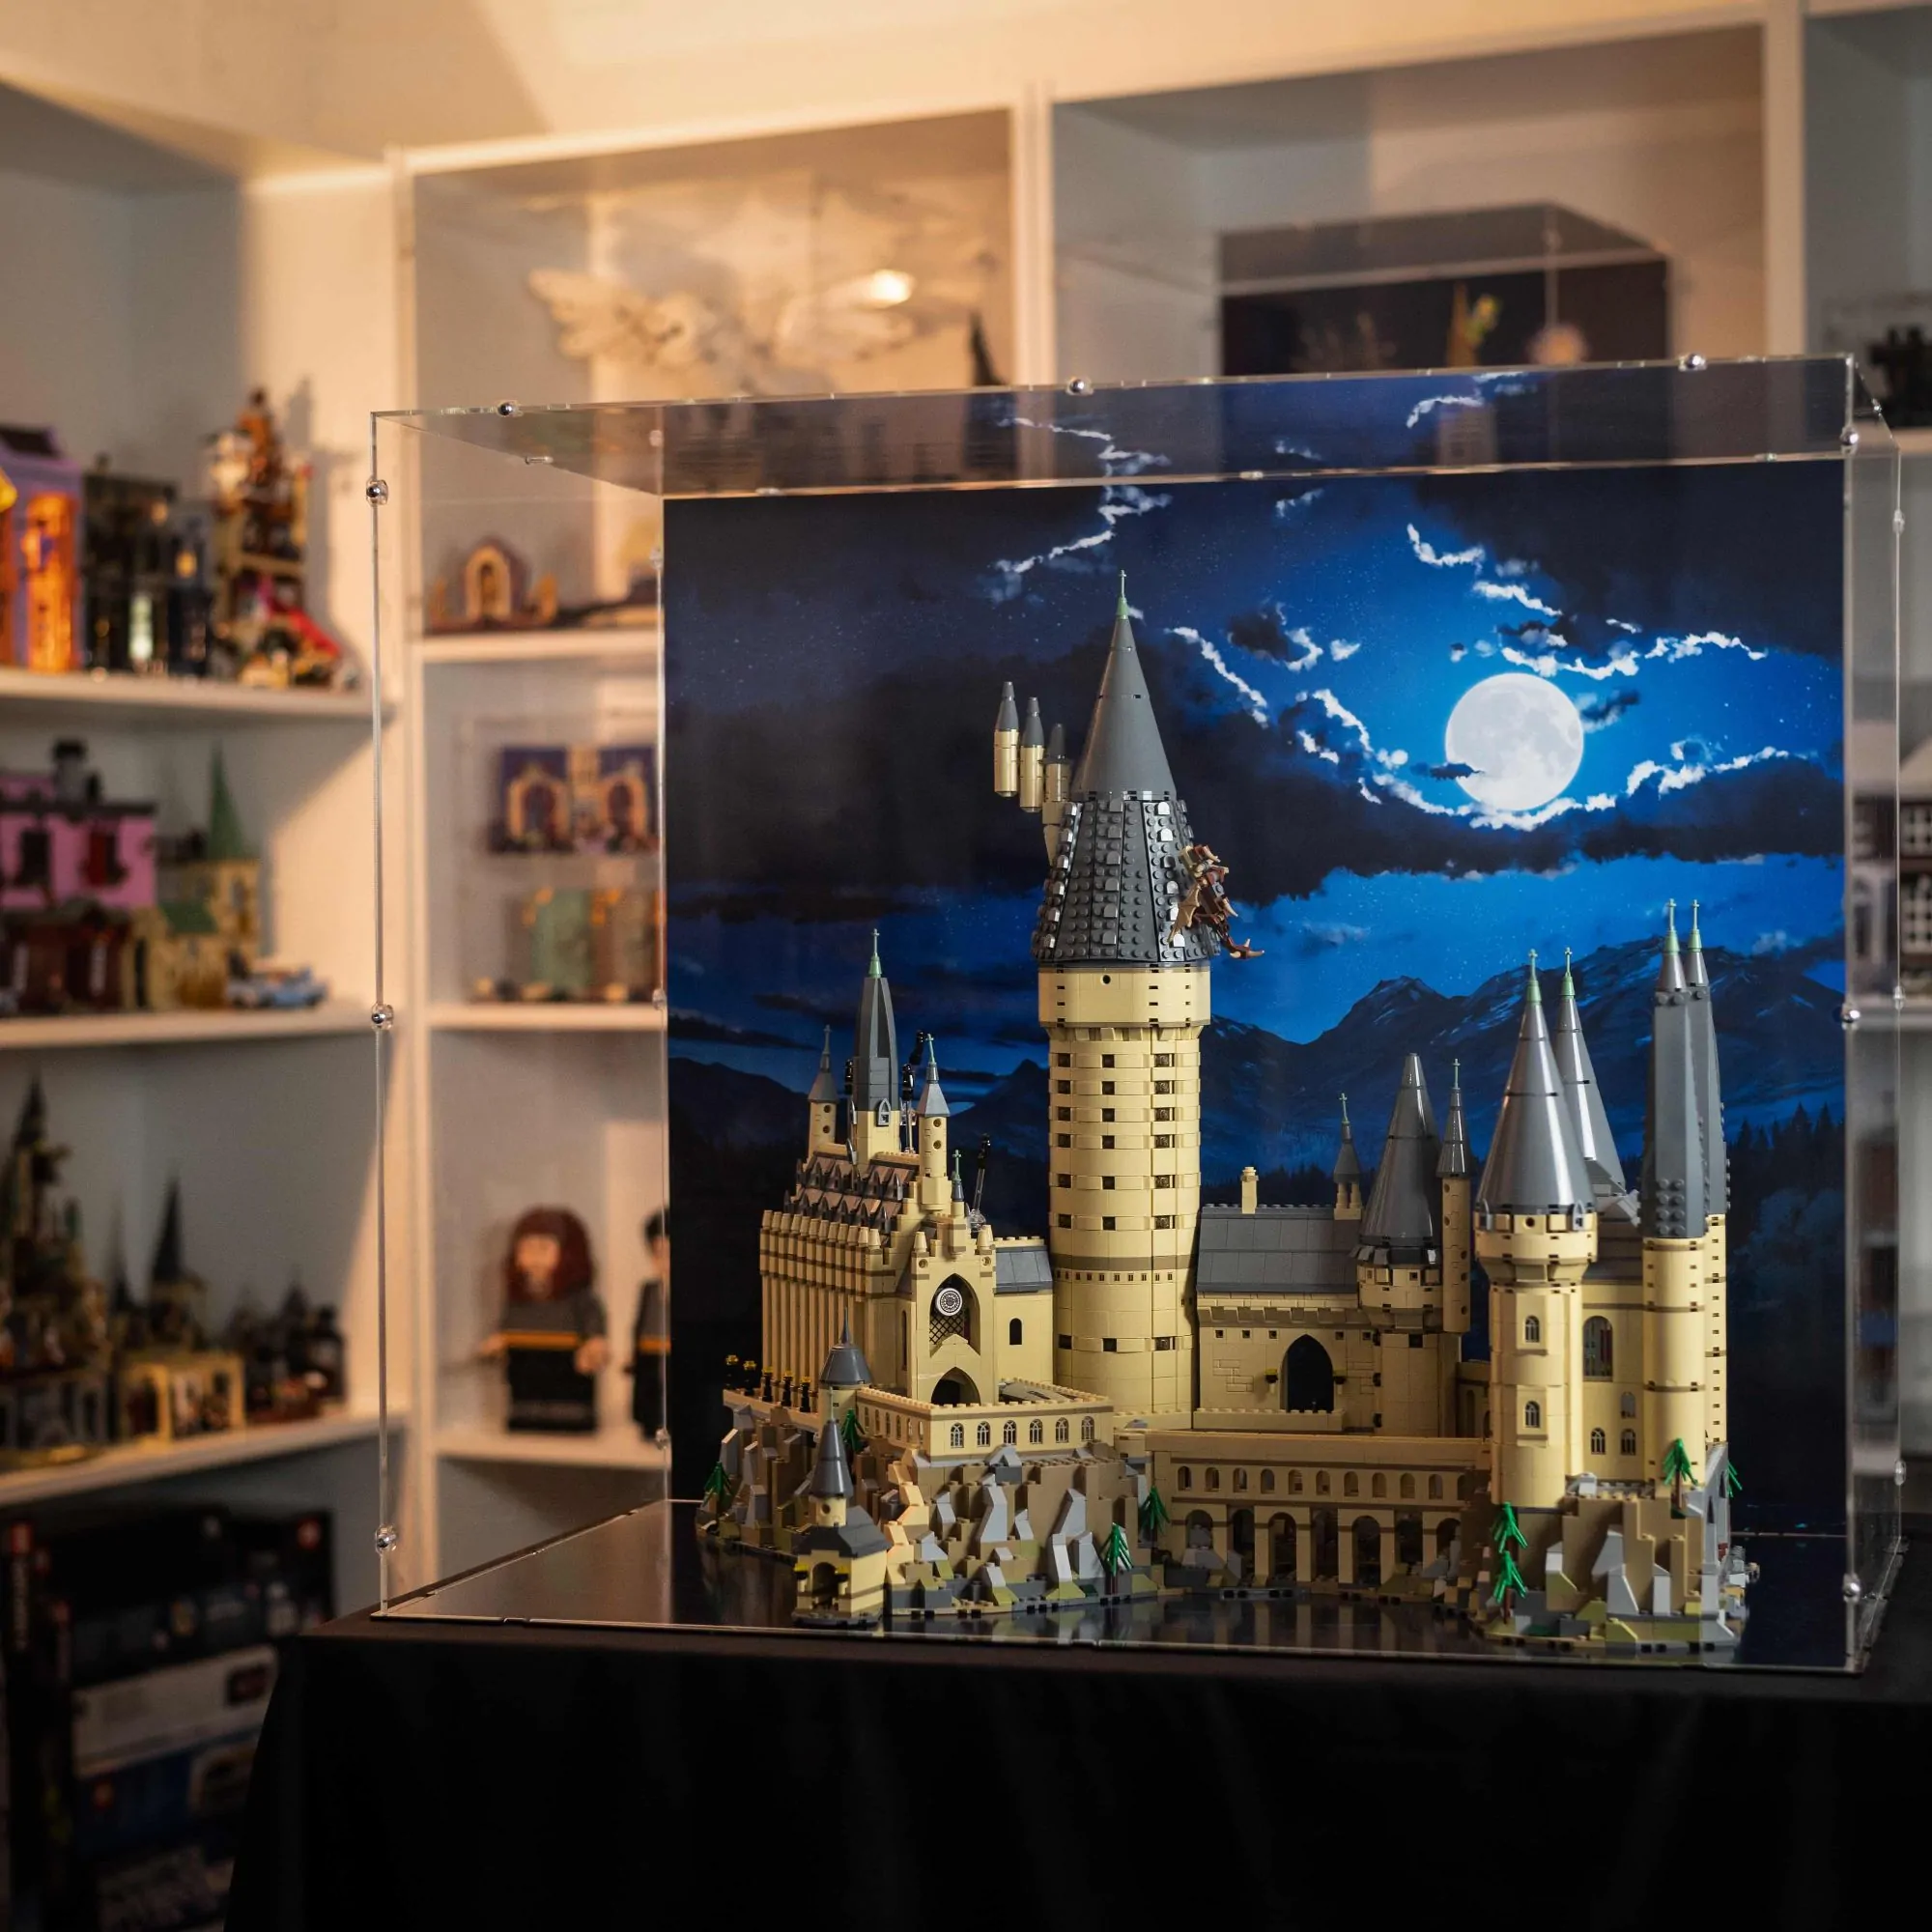 Hogwarts™ Castle 71043 - LEGO® Harry Potter™ and Fantastic Beasts™ Sets -   for kids